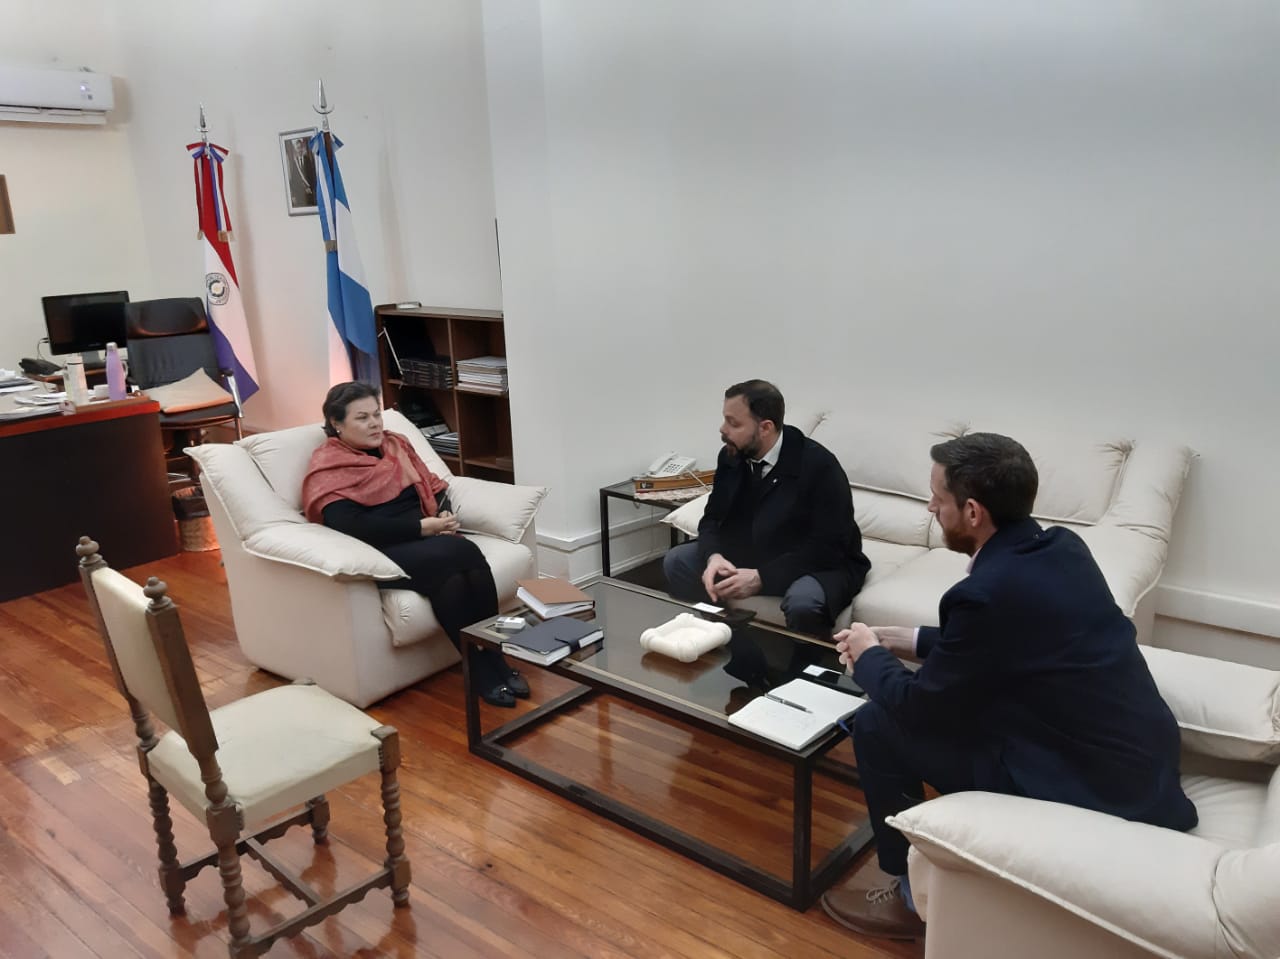 Cónsul General en Buenos Aires busca facilidades para el acceso de connacionales al servicio social